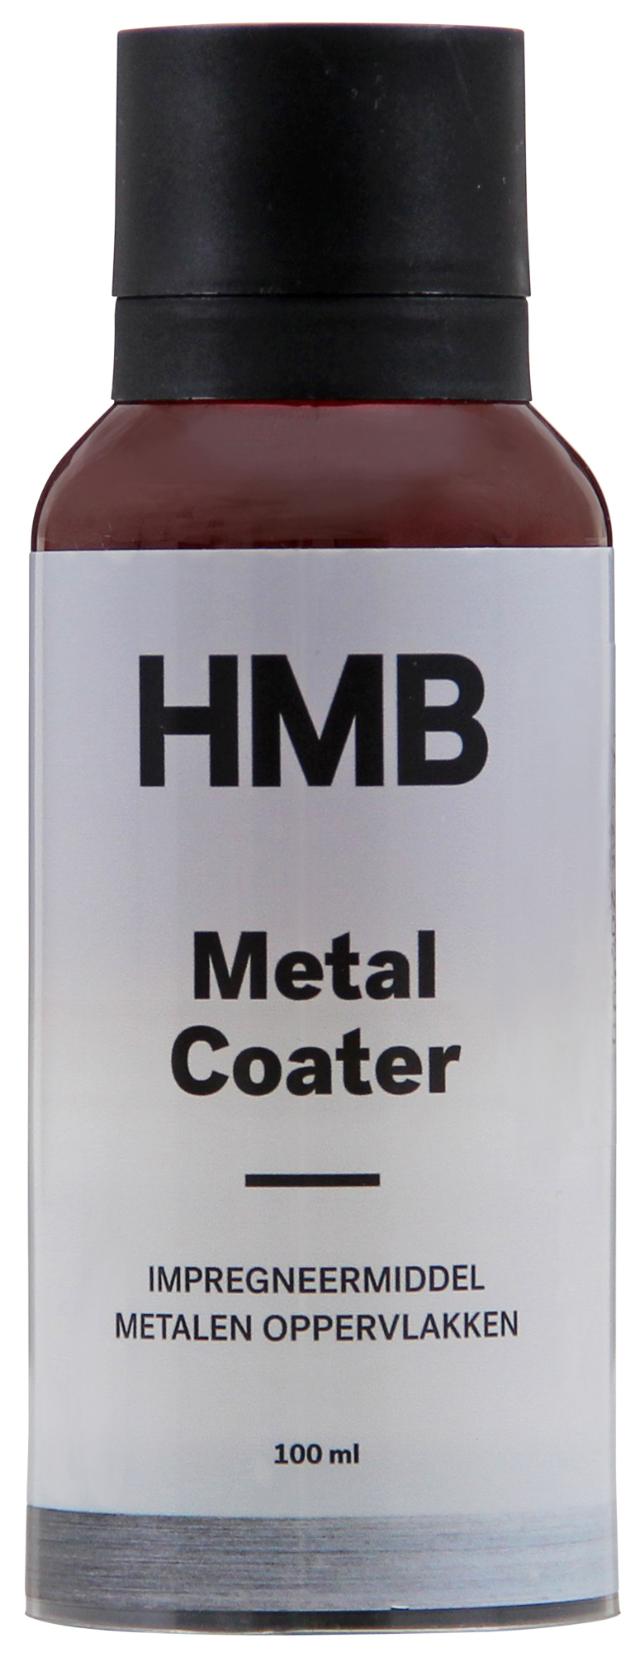 Metal Coater | Antiroest Beschermingsmiddel Metaal | 100ml